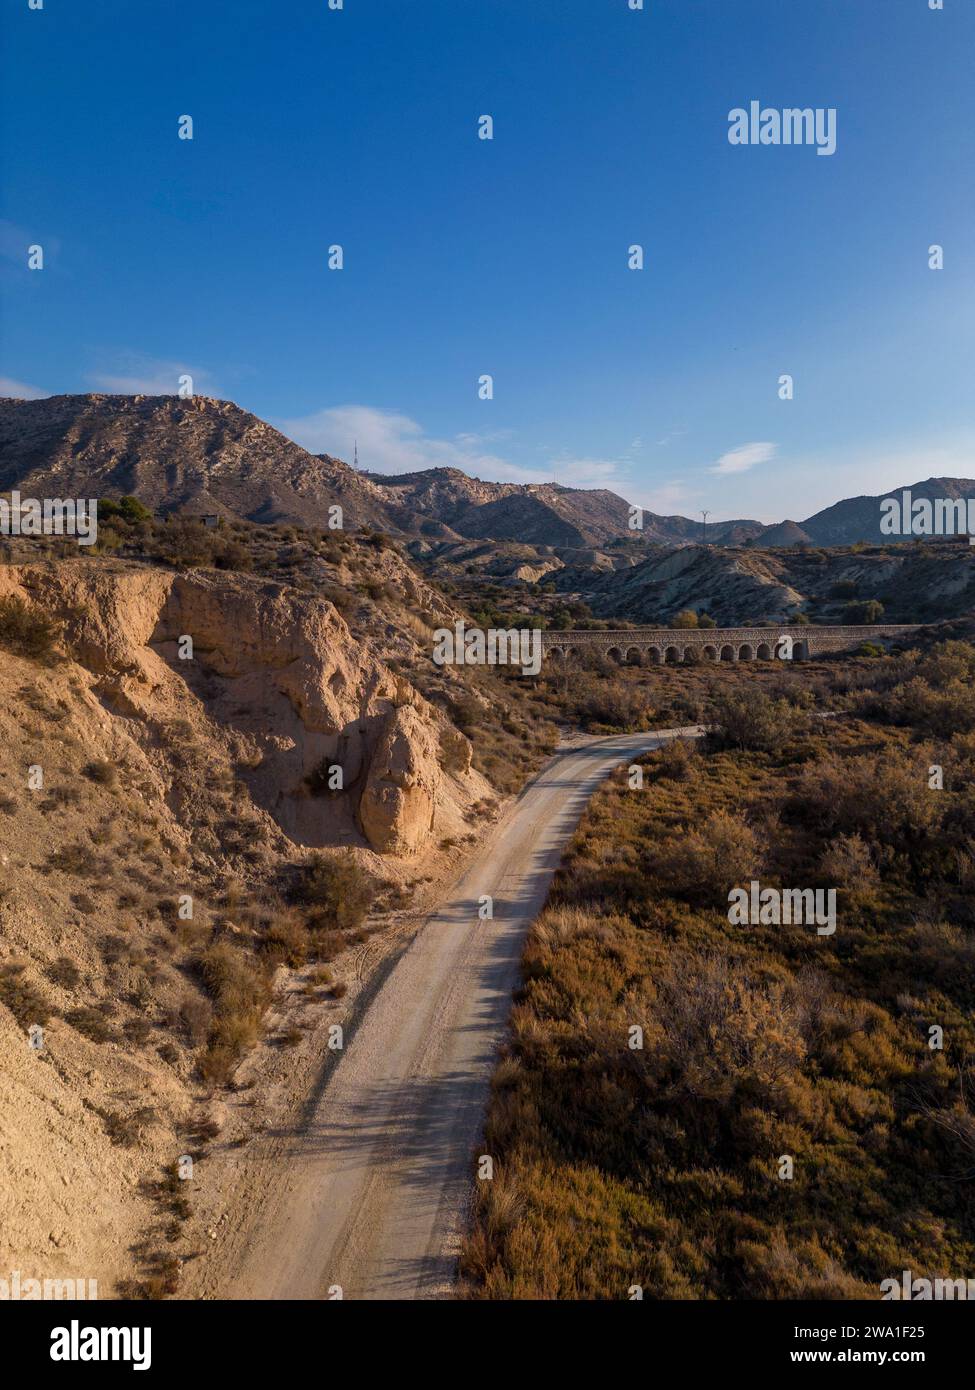 Camino de tierra en paisaje desierto árido con acantilados distantes y luz solar de la mañana, Elche, provincia de Alicante, España - Foto de stock Foto de stock